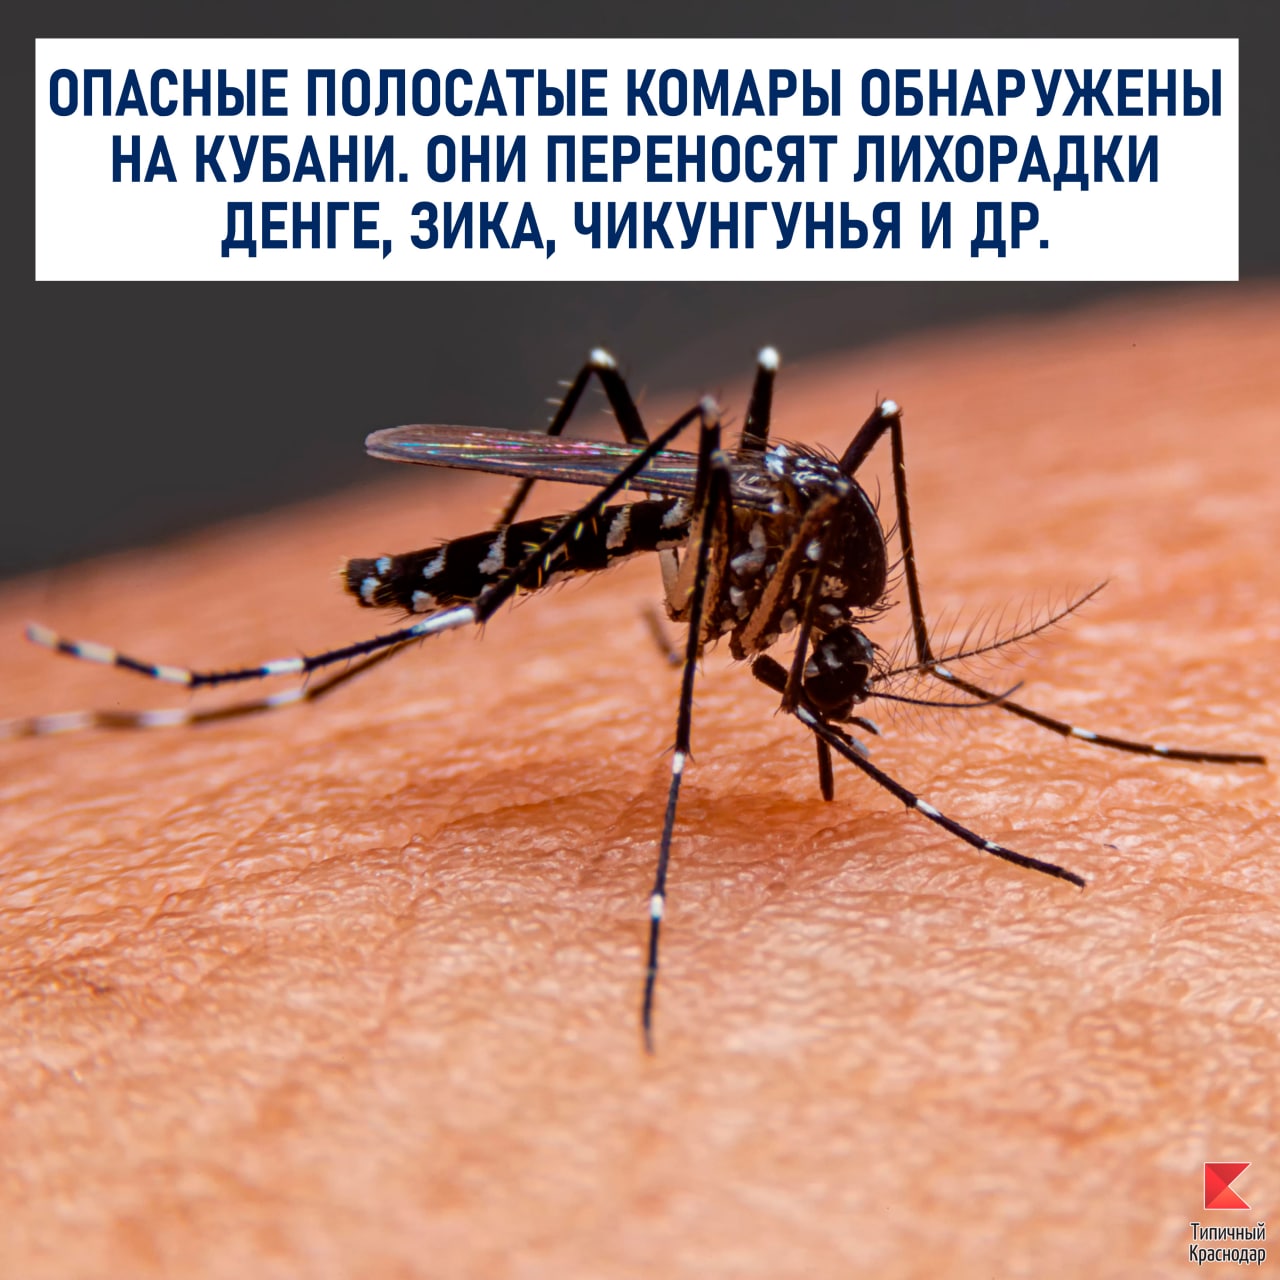 Опасные полосатые комары обнаружены на Кубани.